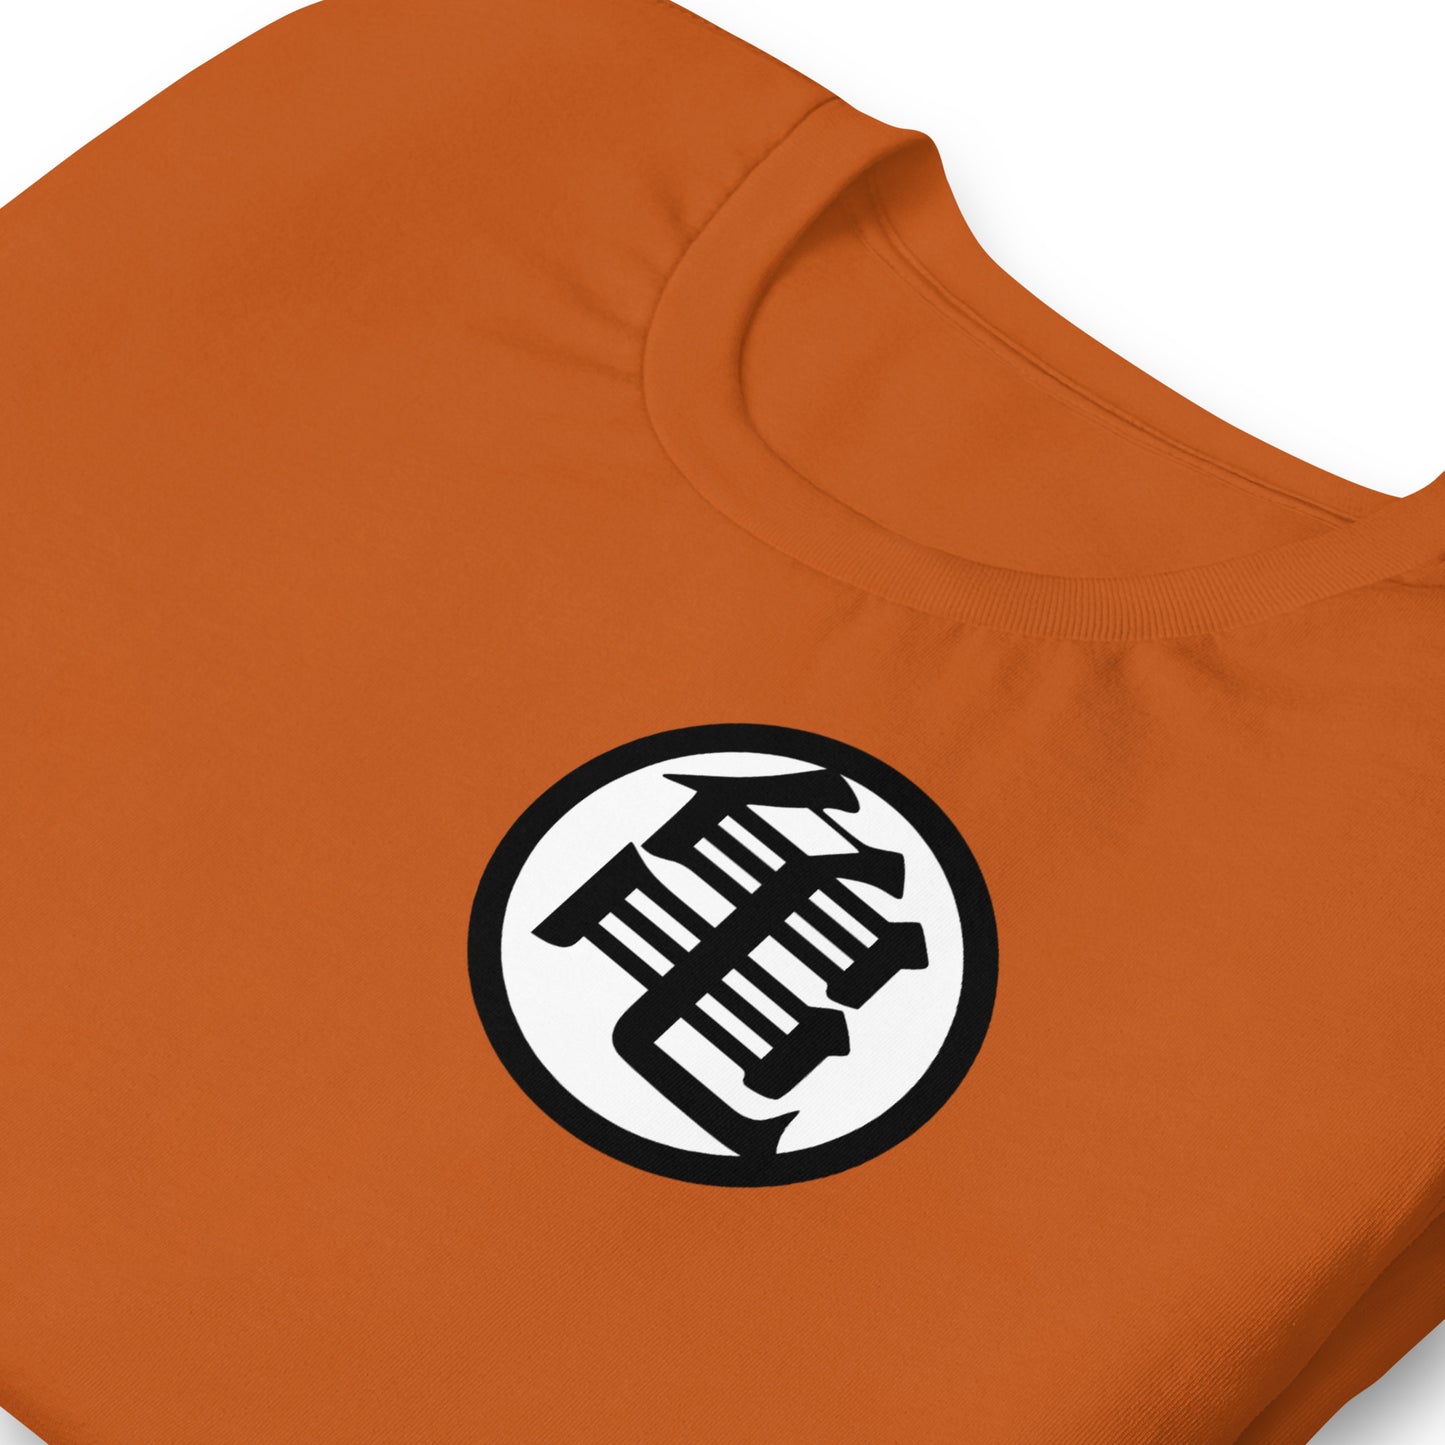 detalle de camiseta del uniforme de goku de bola de dragon en color naranja